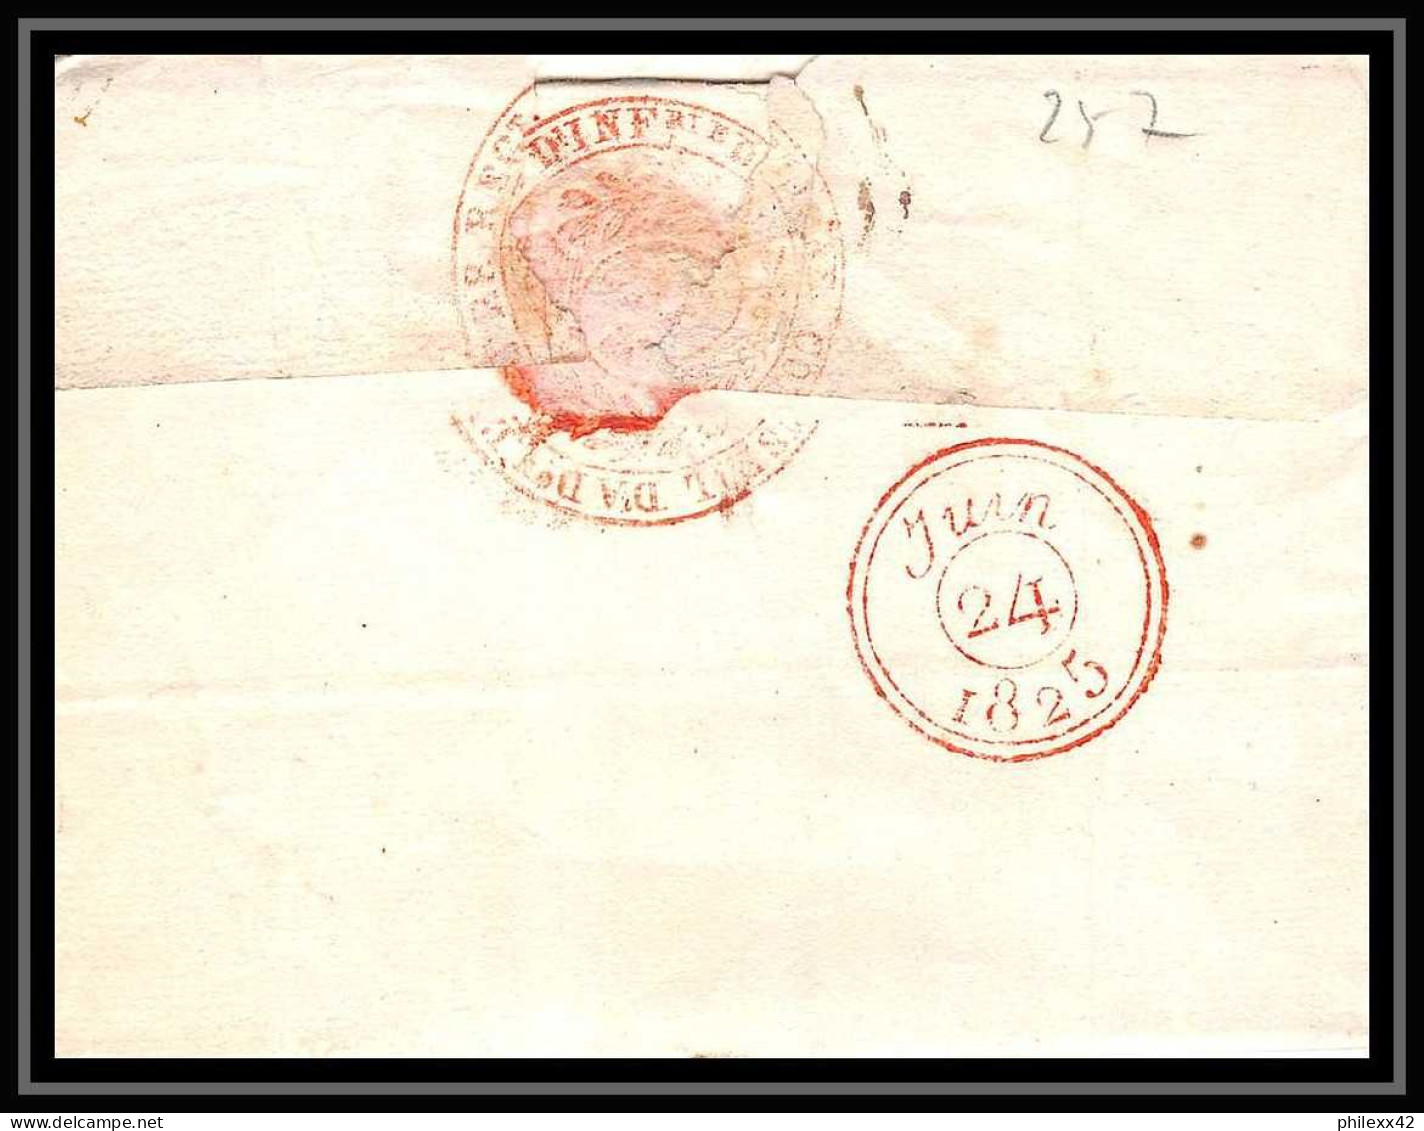 0257 Charente-Maritime Marque Postale La Rochelle 23/6/1825 Cachet ARMEE 28 EME REGIMENT En Roug LAC Lettre Cover France - Army Postmarks (before 1900)